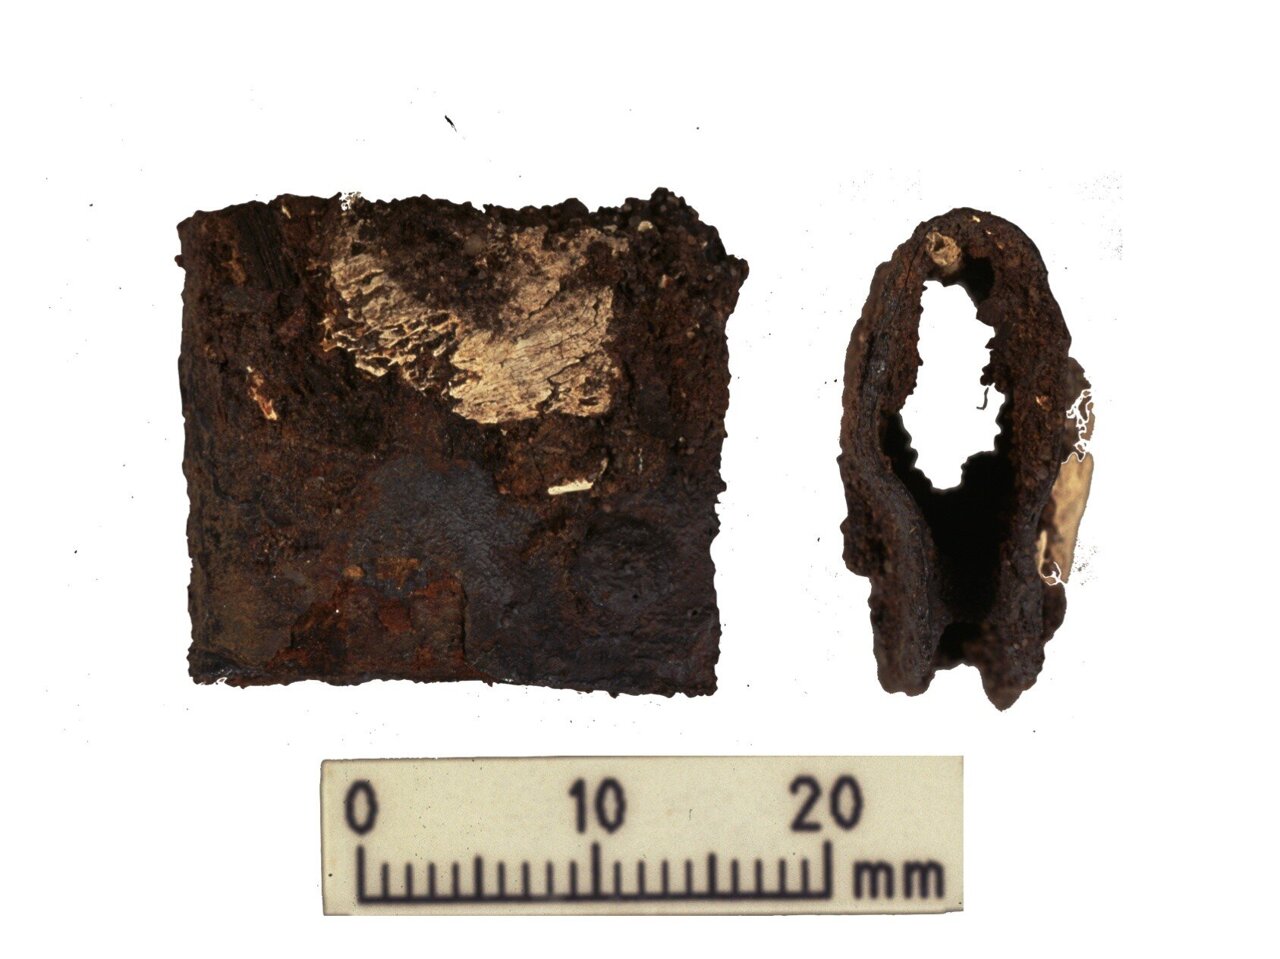 Închizătoare de la scutul războinic viking găsit în timpul săpăturilor originale din 1998-2000. Închizătorul a fost găsit în același mormânt cu rămășițele umane și animale analizate în timpul ultimelor cercetări.